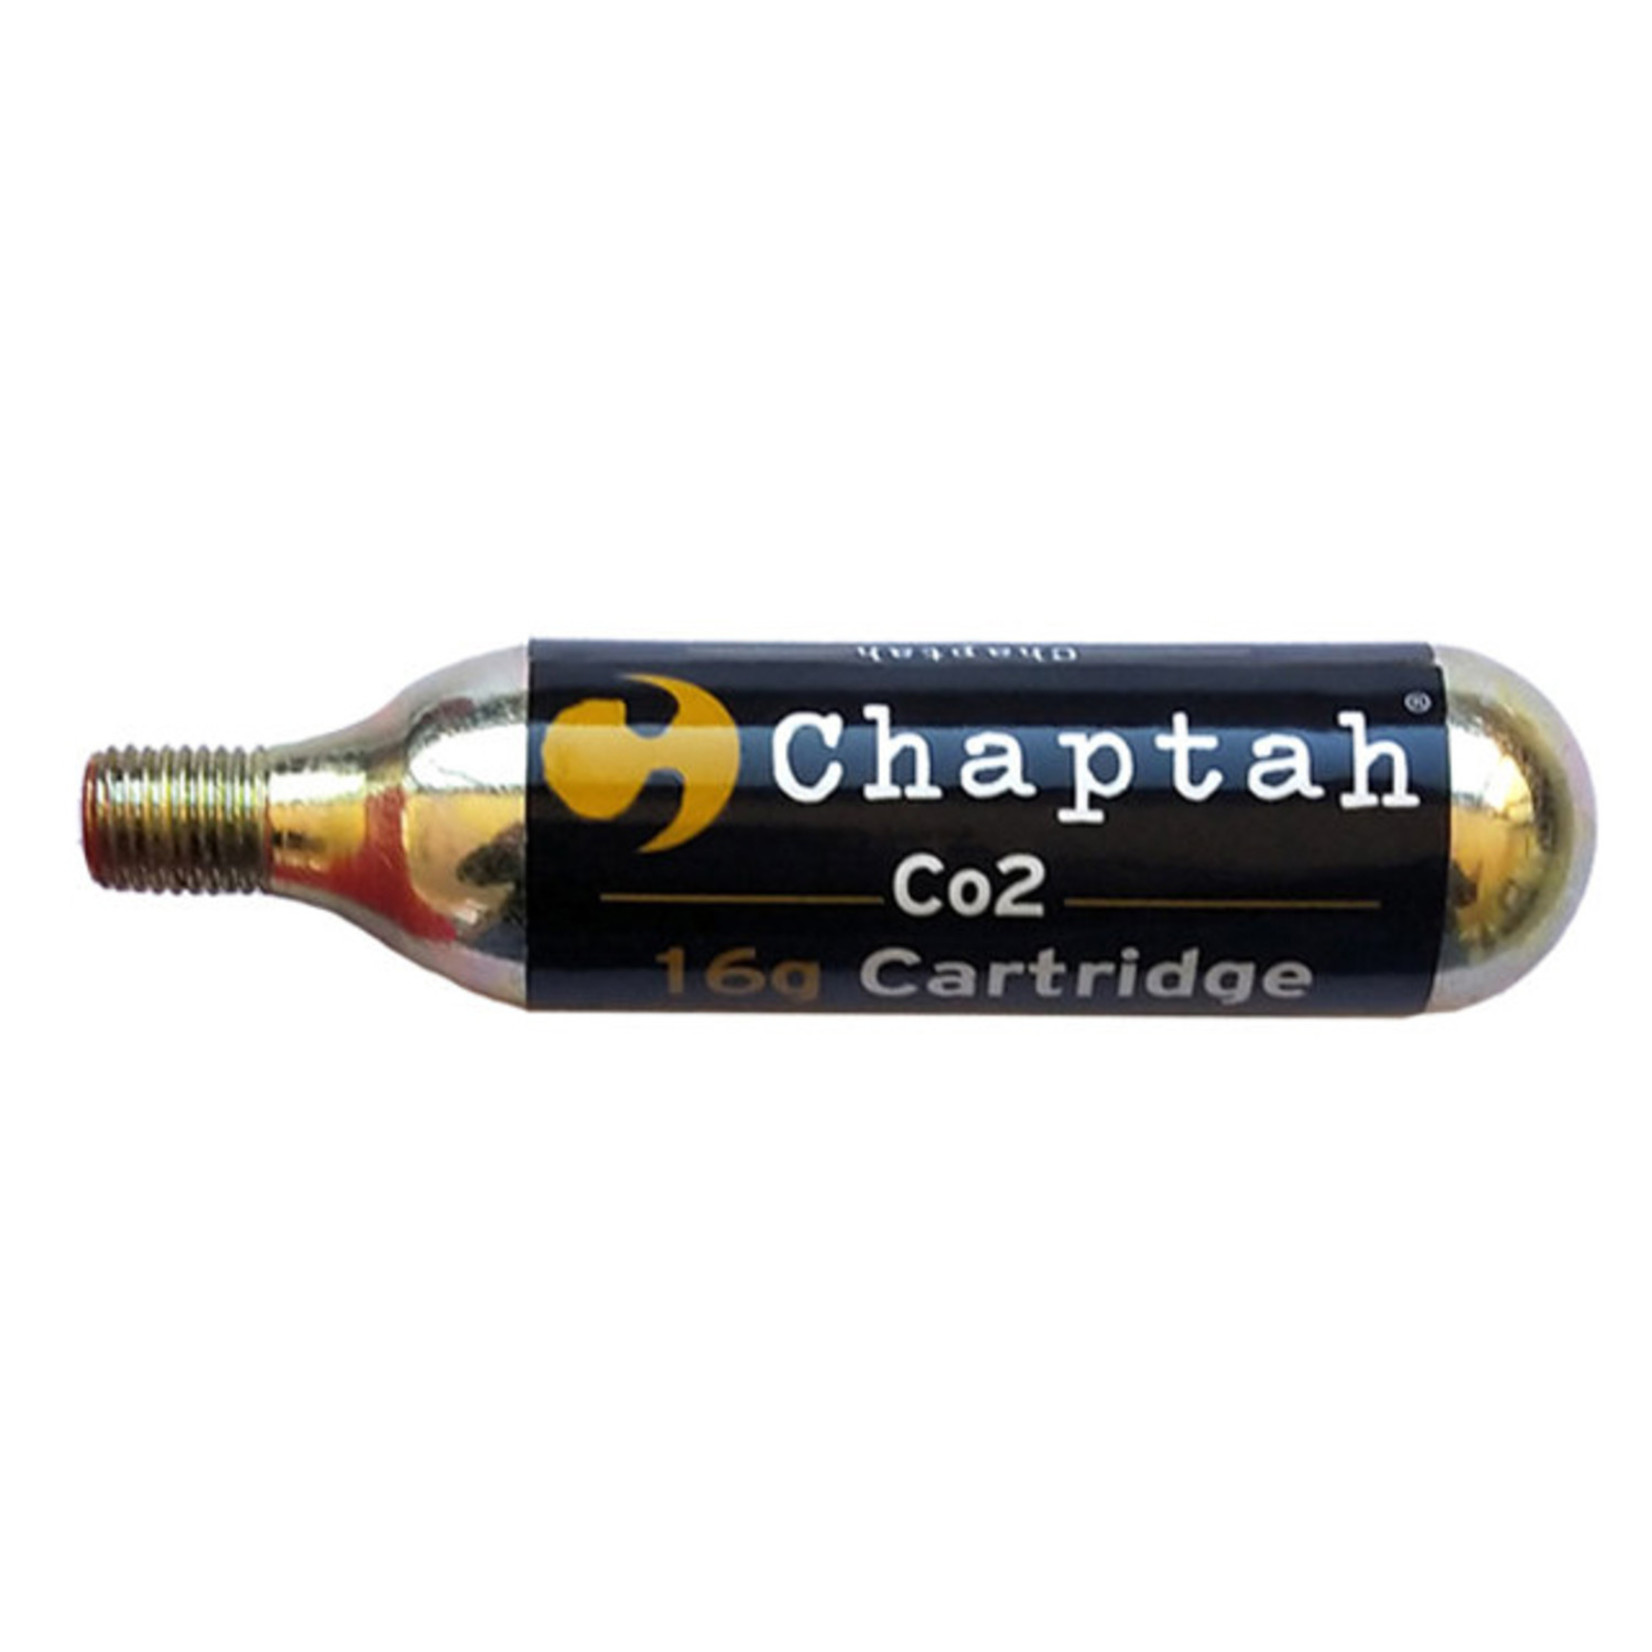 Chaptah CO2 16G THREAD CARTRIDGE